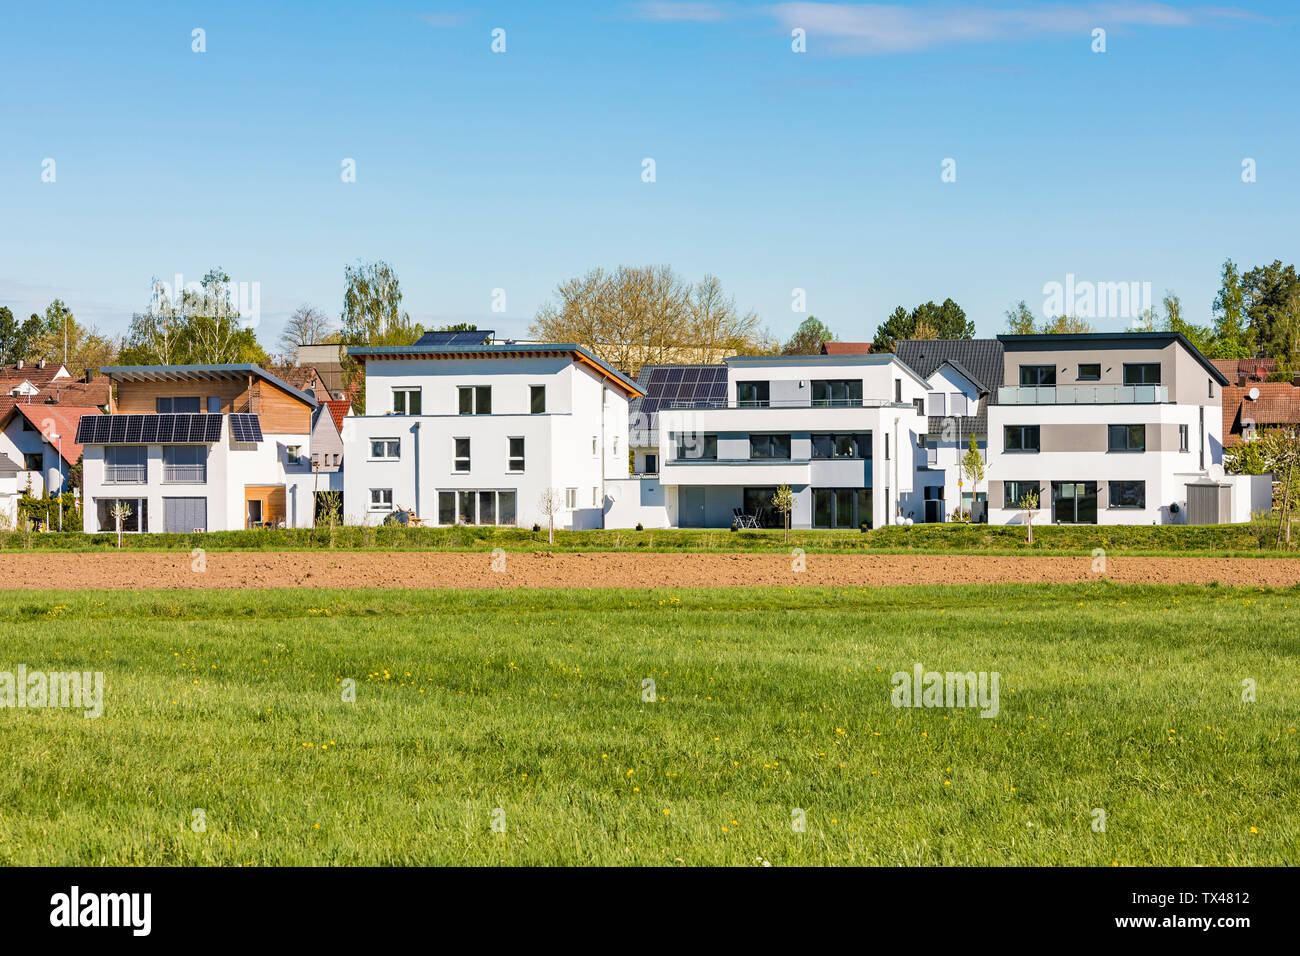 Deutschland, Magstadt, moderne Einfamilienhäuser mit thermischer Solarenergie Stockfoto